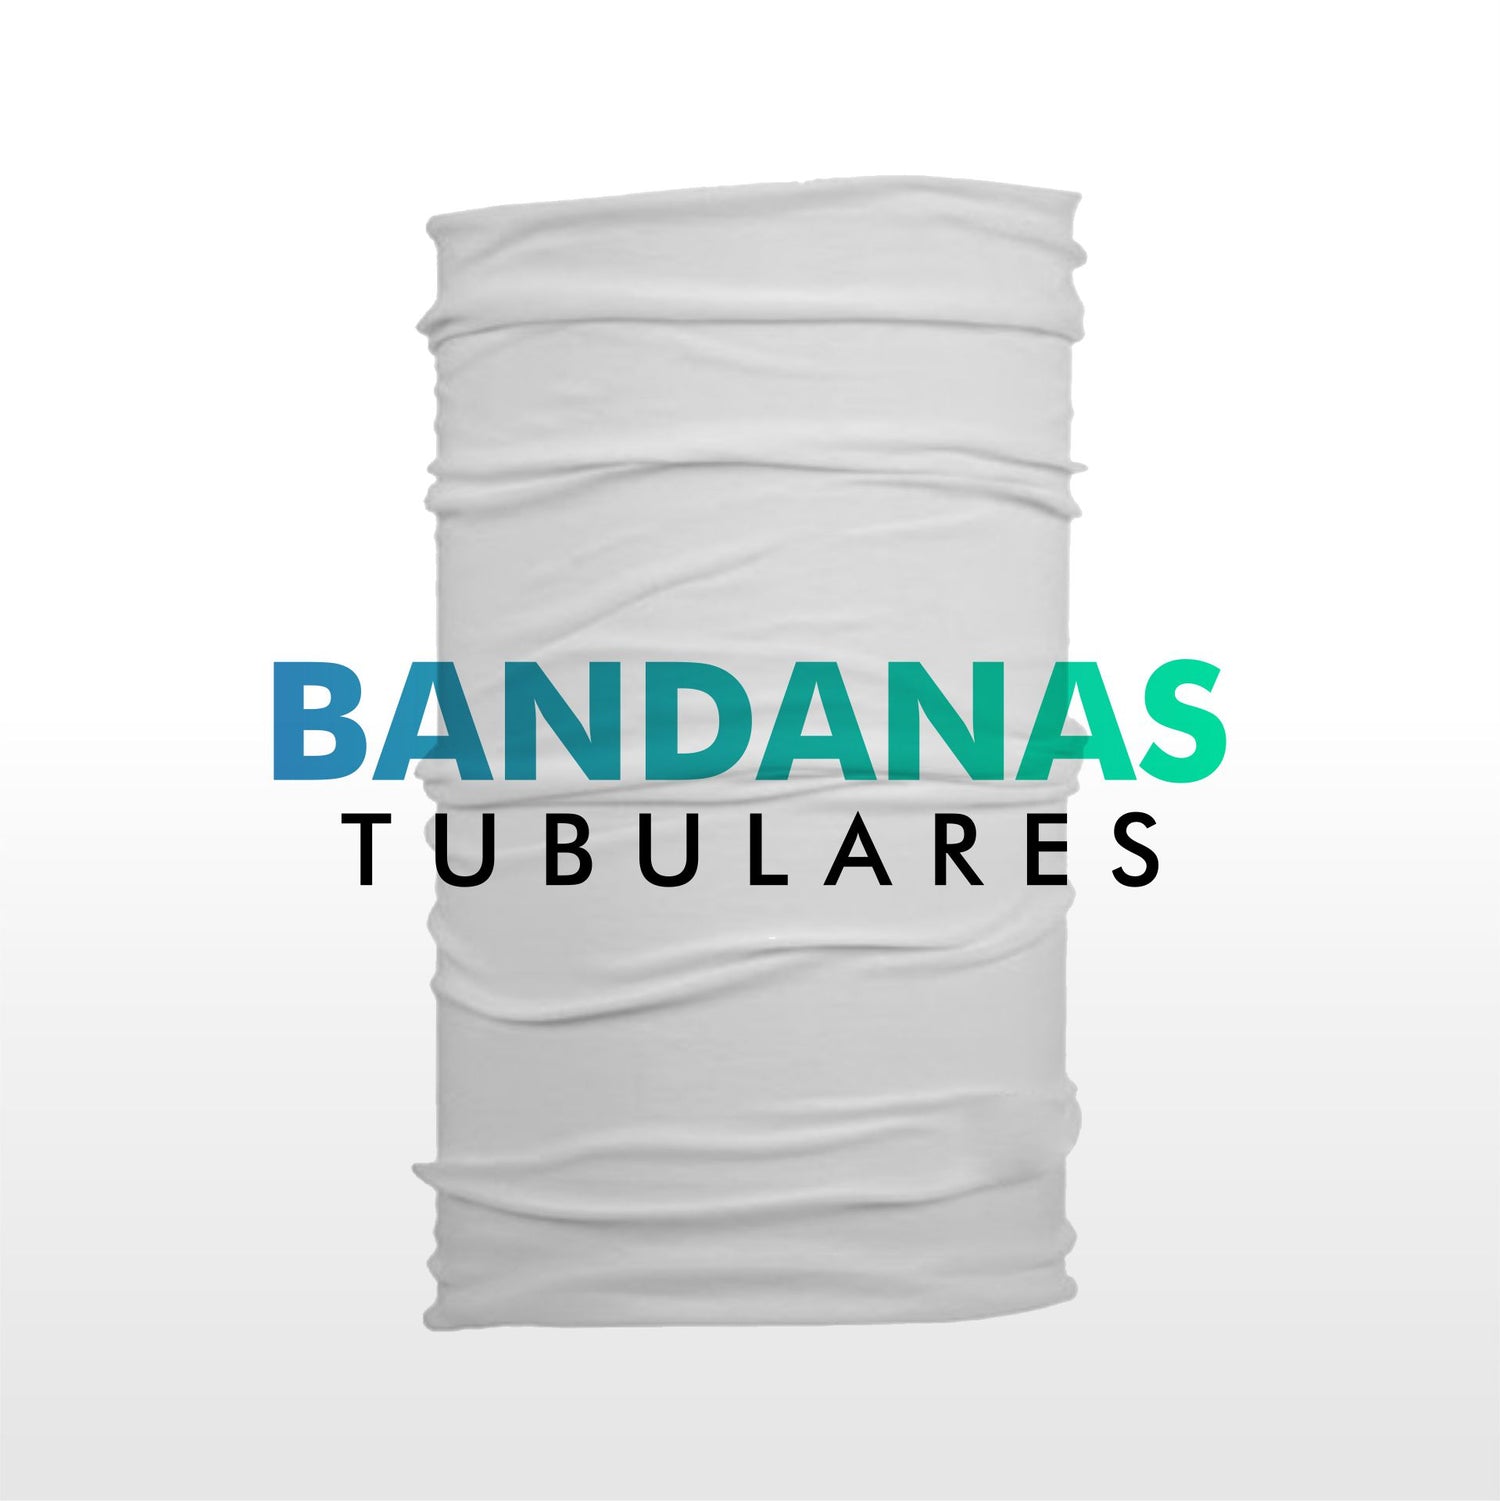 BANDANAS TUBULARES